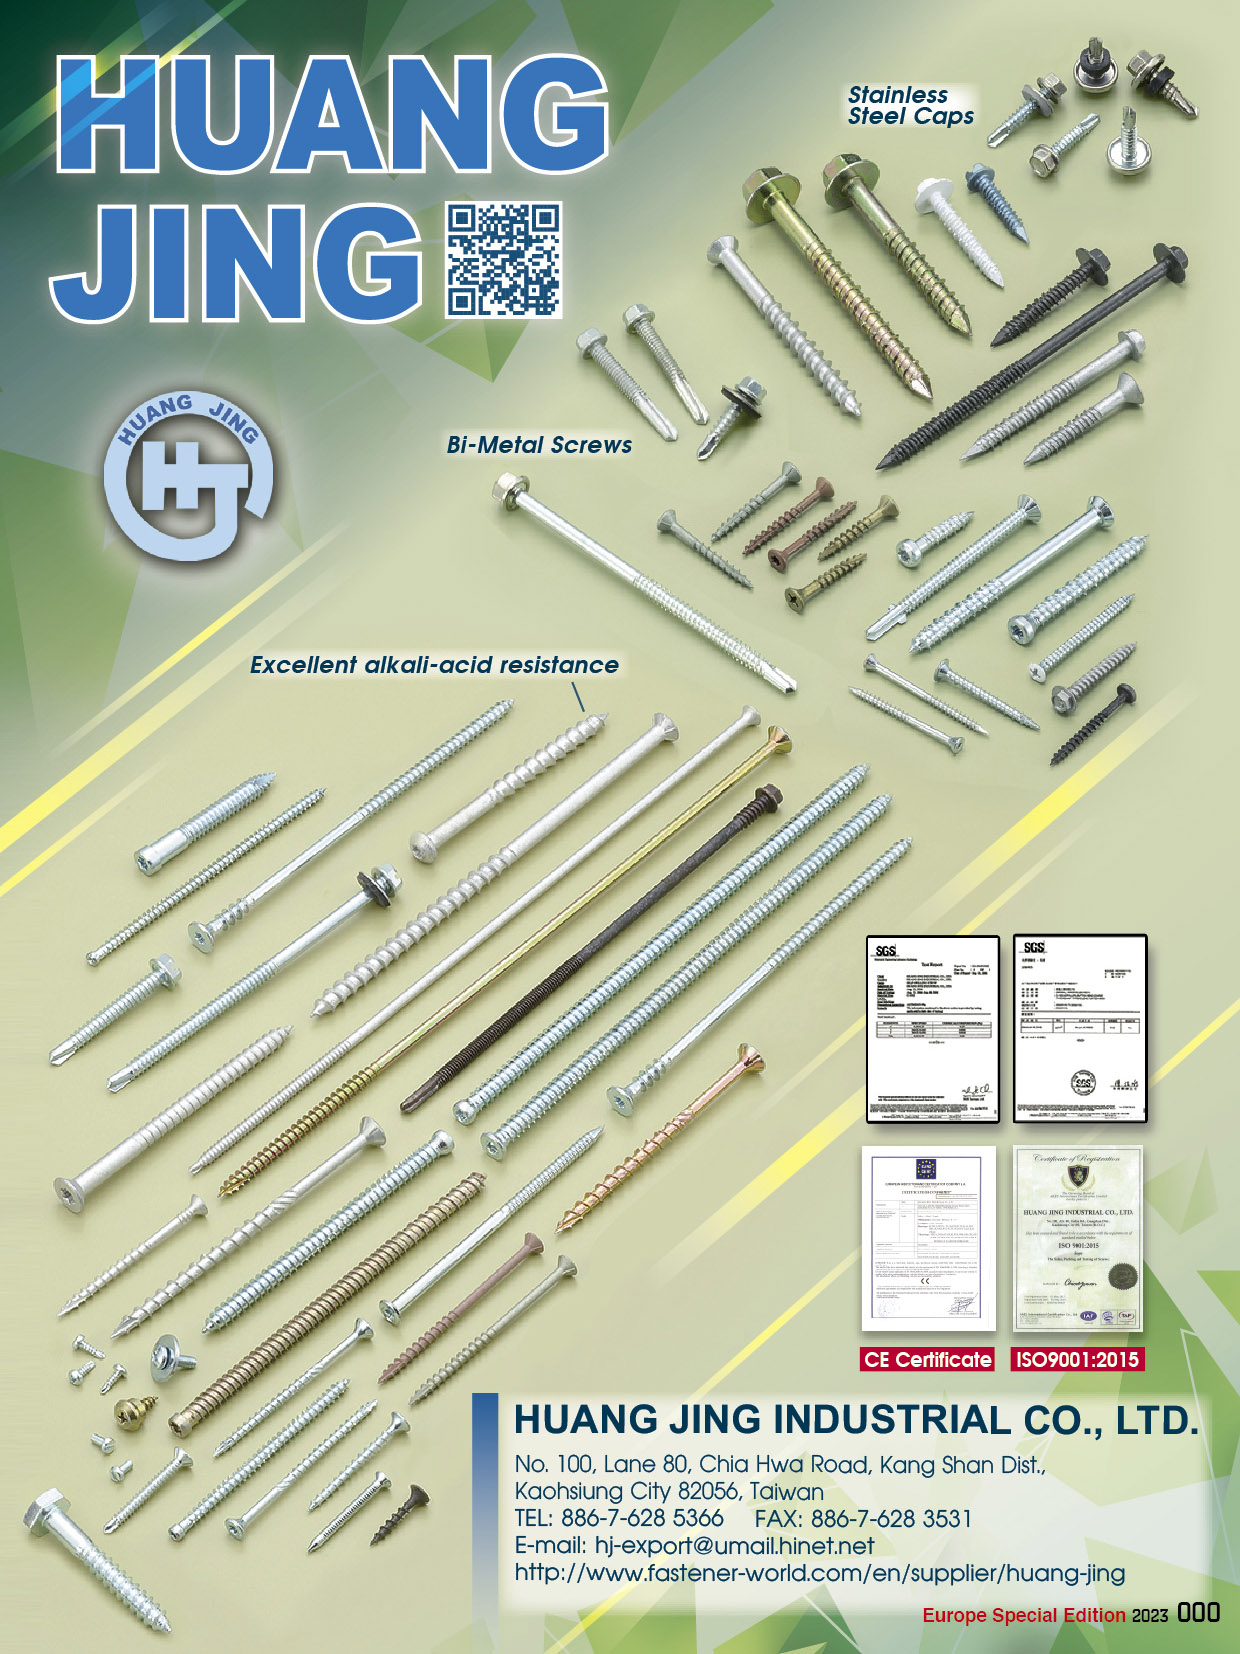 HUANG JING INDUSTRIAL CO., LTD.  , Stainless Steel Caps, Bi-Metal Screws, Excellent Alkali-acid Resistance